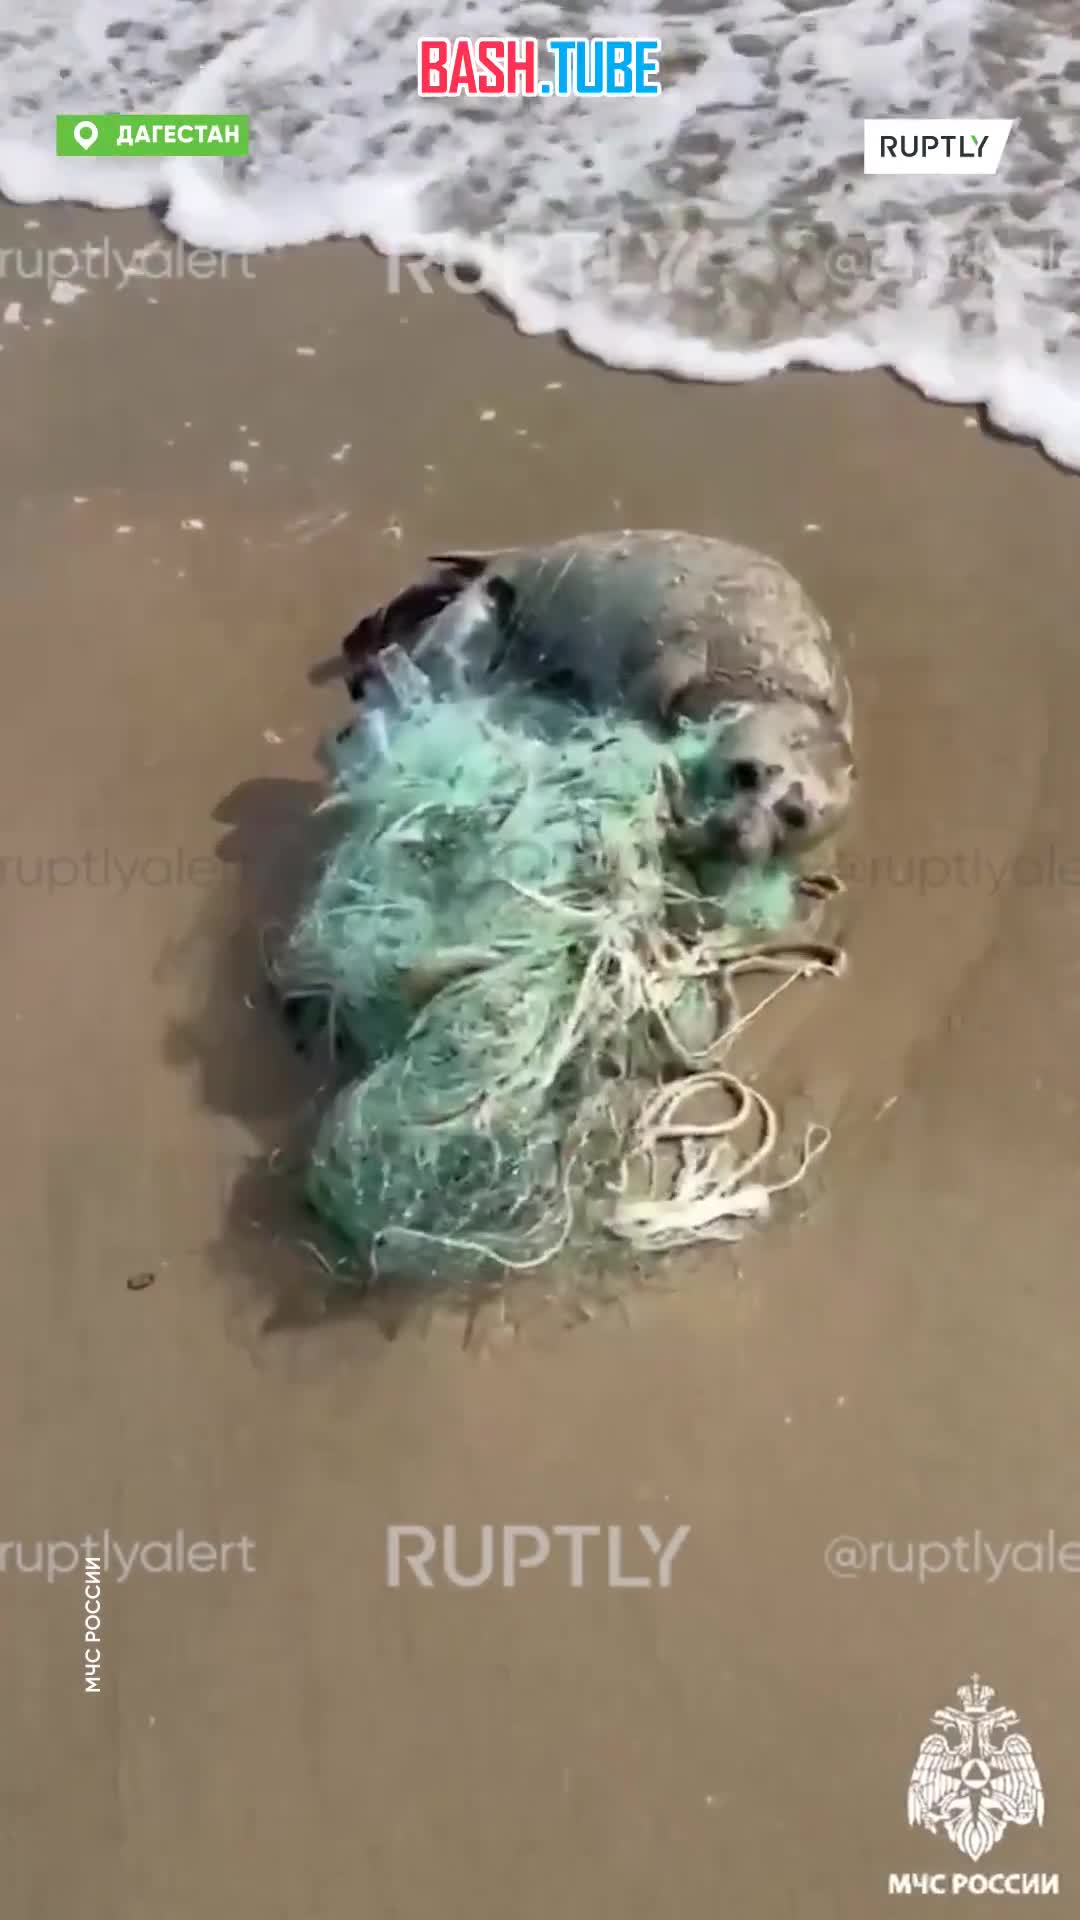  Cотрудник МЧС России спас запутавшегося в рыболовной сети малыша тюленя